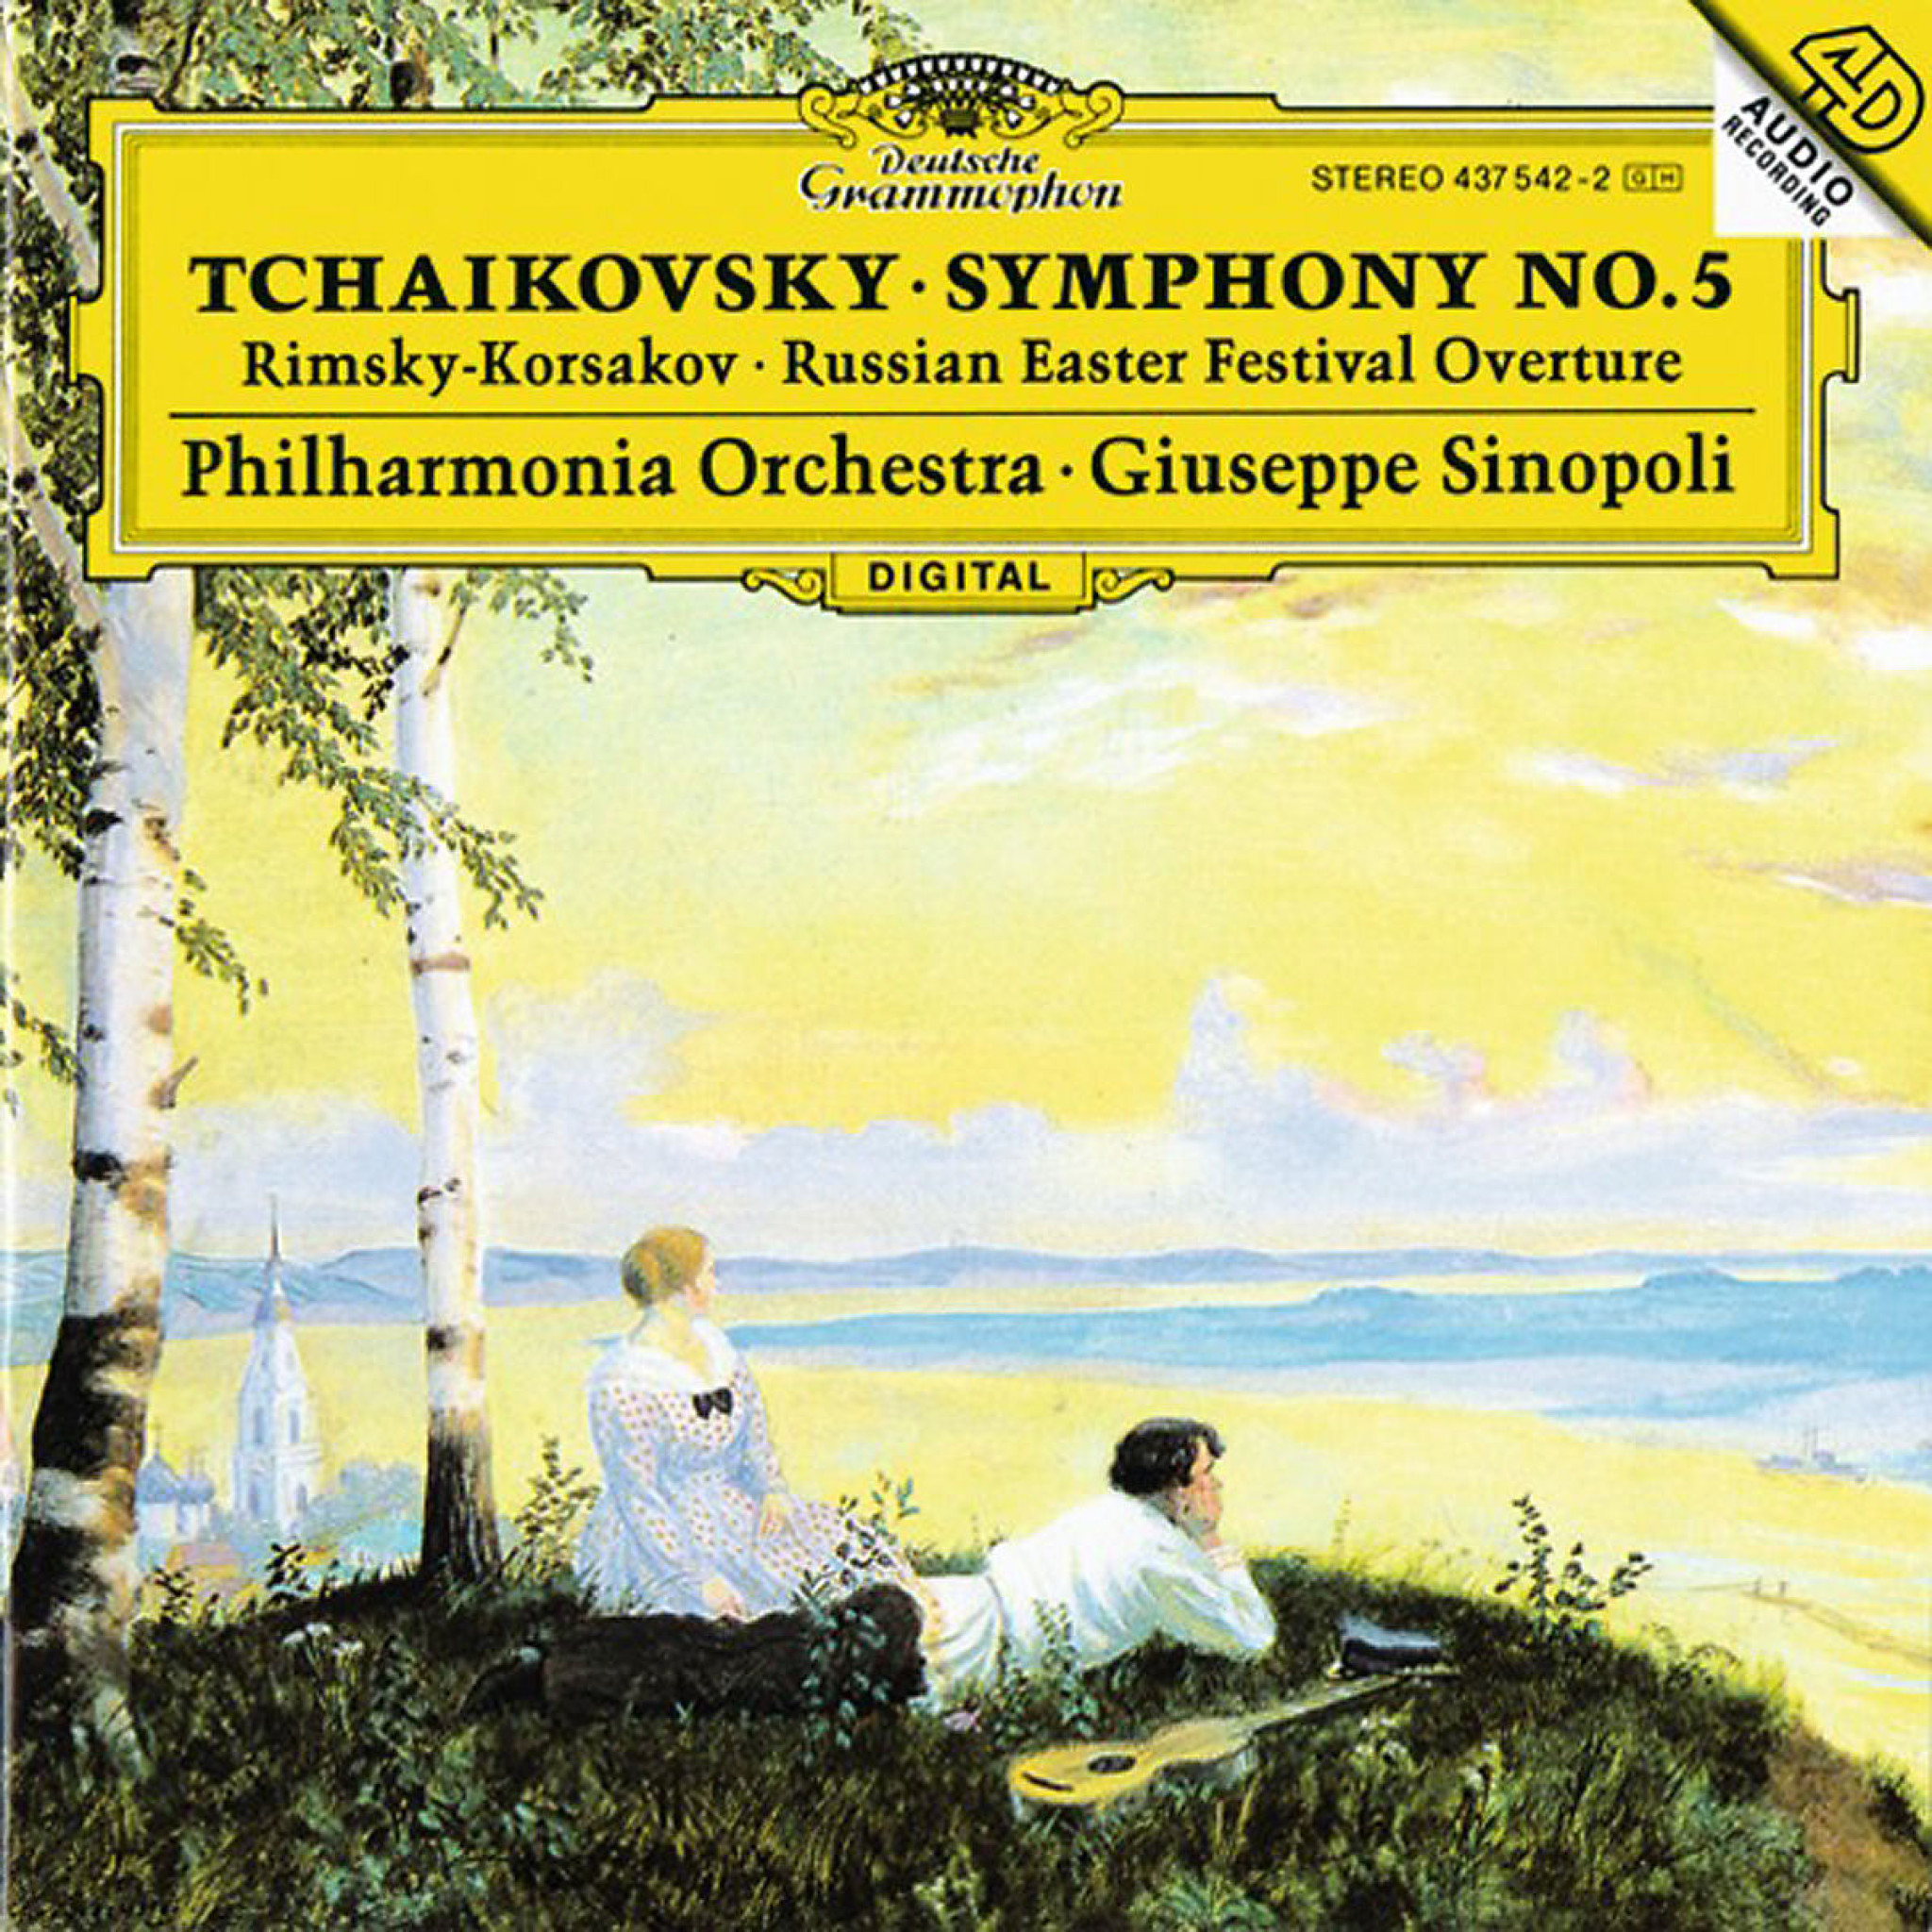 TCHAIKOVSKY Symphonie + RIMSKY-KORSAKOV/Sinopoli